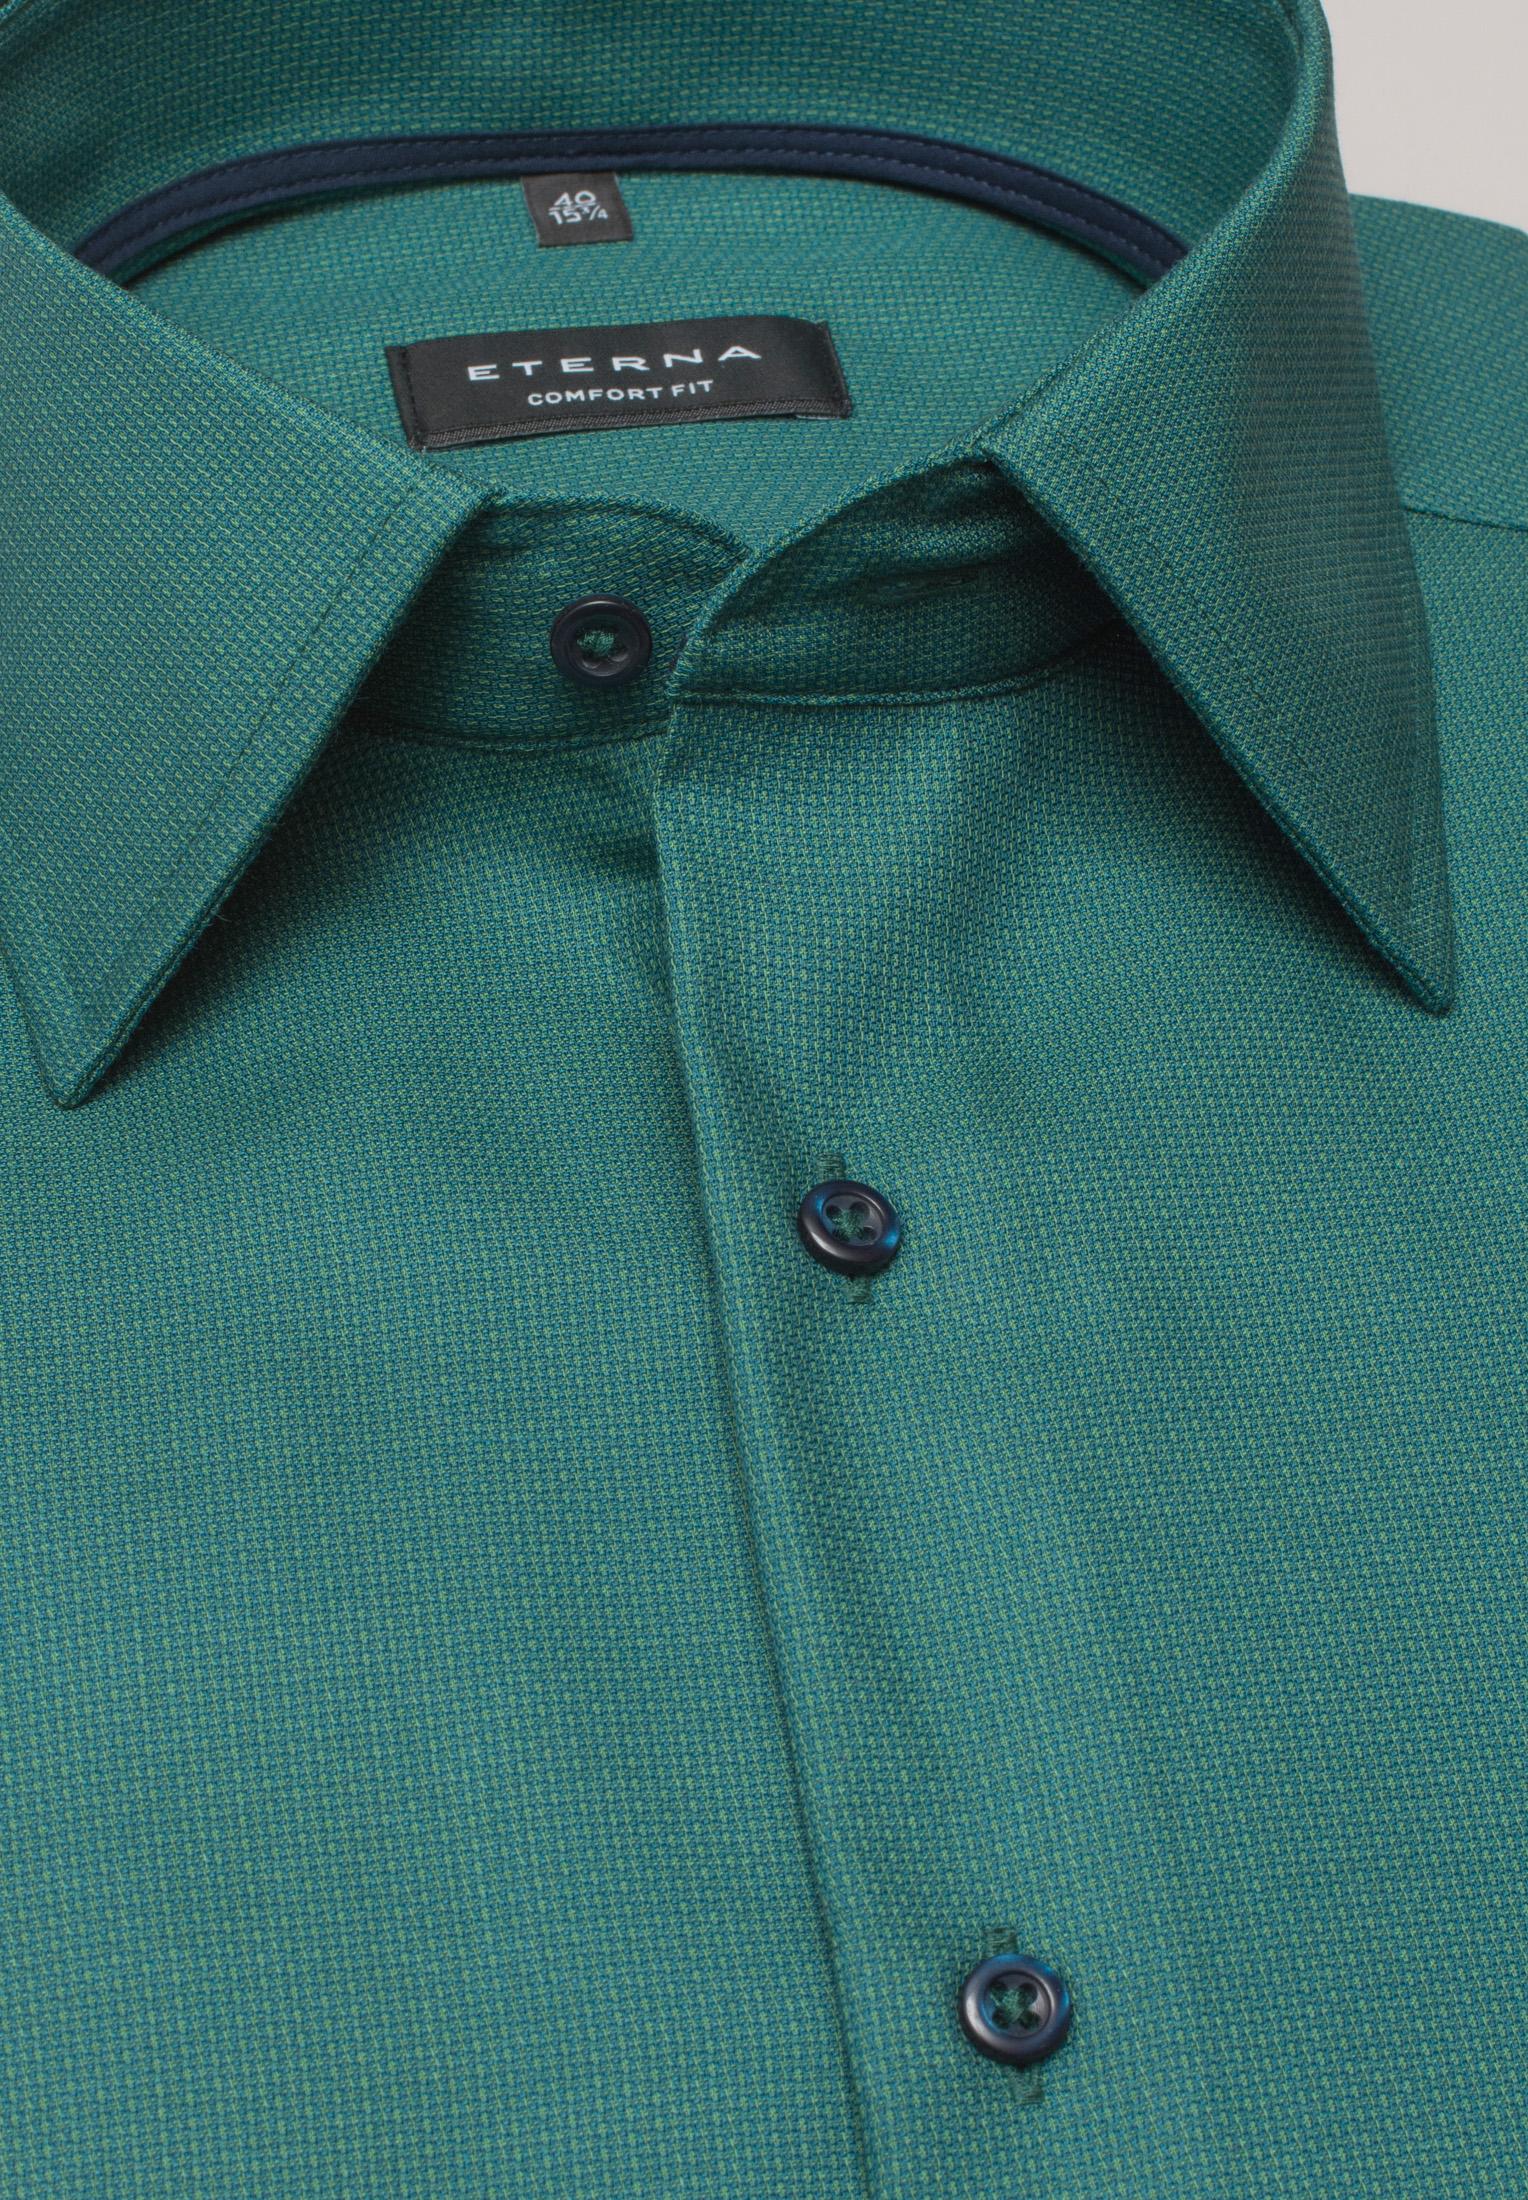 Мужская рубашка ETERNA, зеленая, цвет зеленый, размер 48 - фото 4